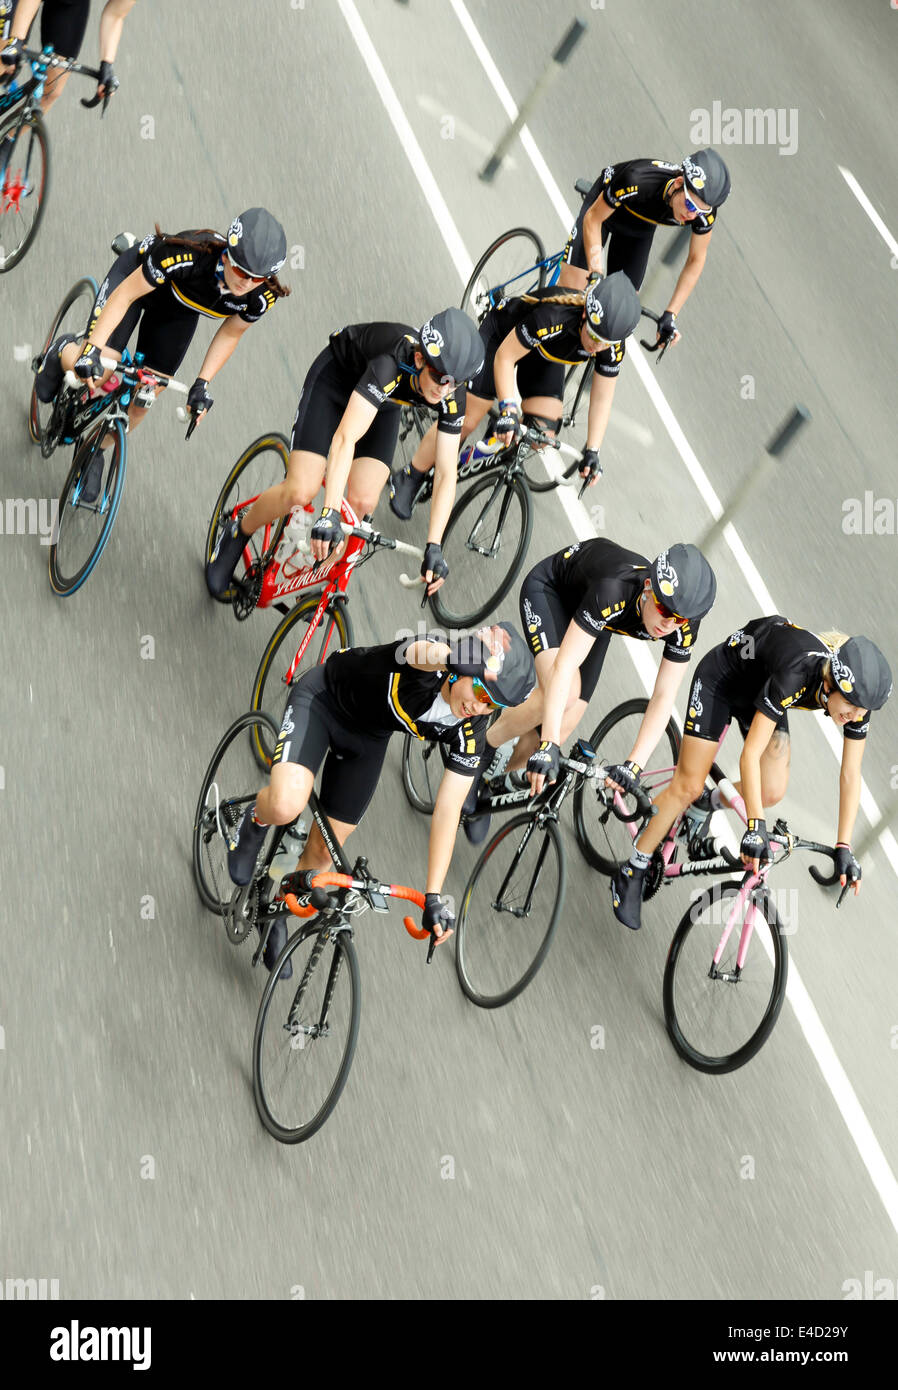 Londres, UK - 7 juillet 2014 : choisis parmi les clubs de cyclisme locale, quatre cadets (15-16 ans) et quatre juniors (17-18 ans) Banque D'Images